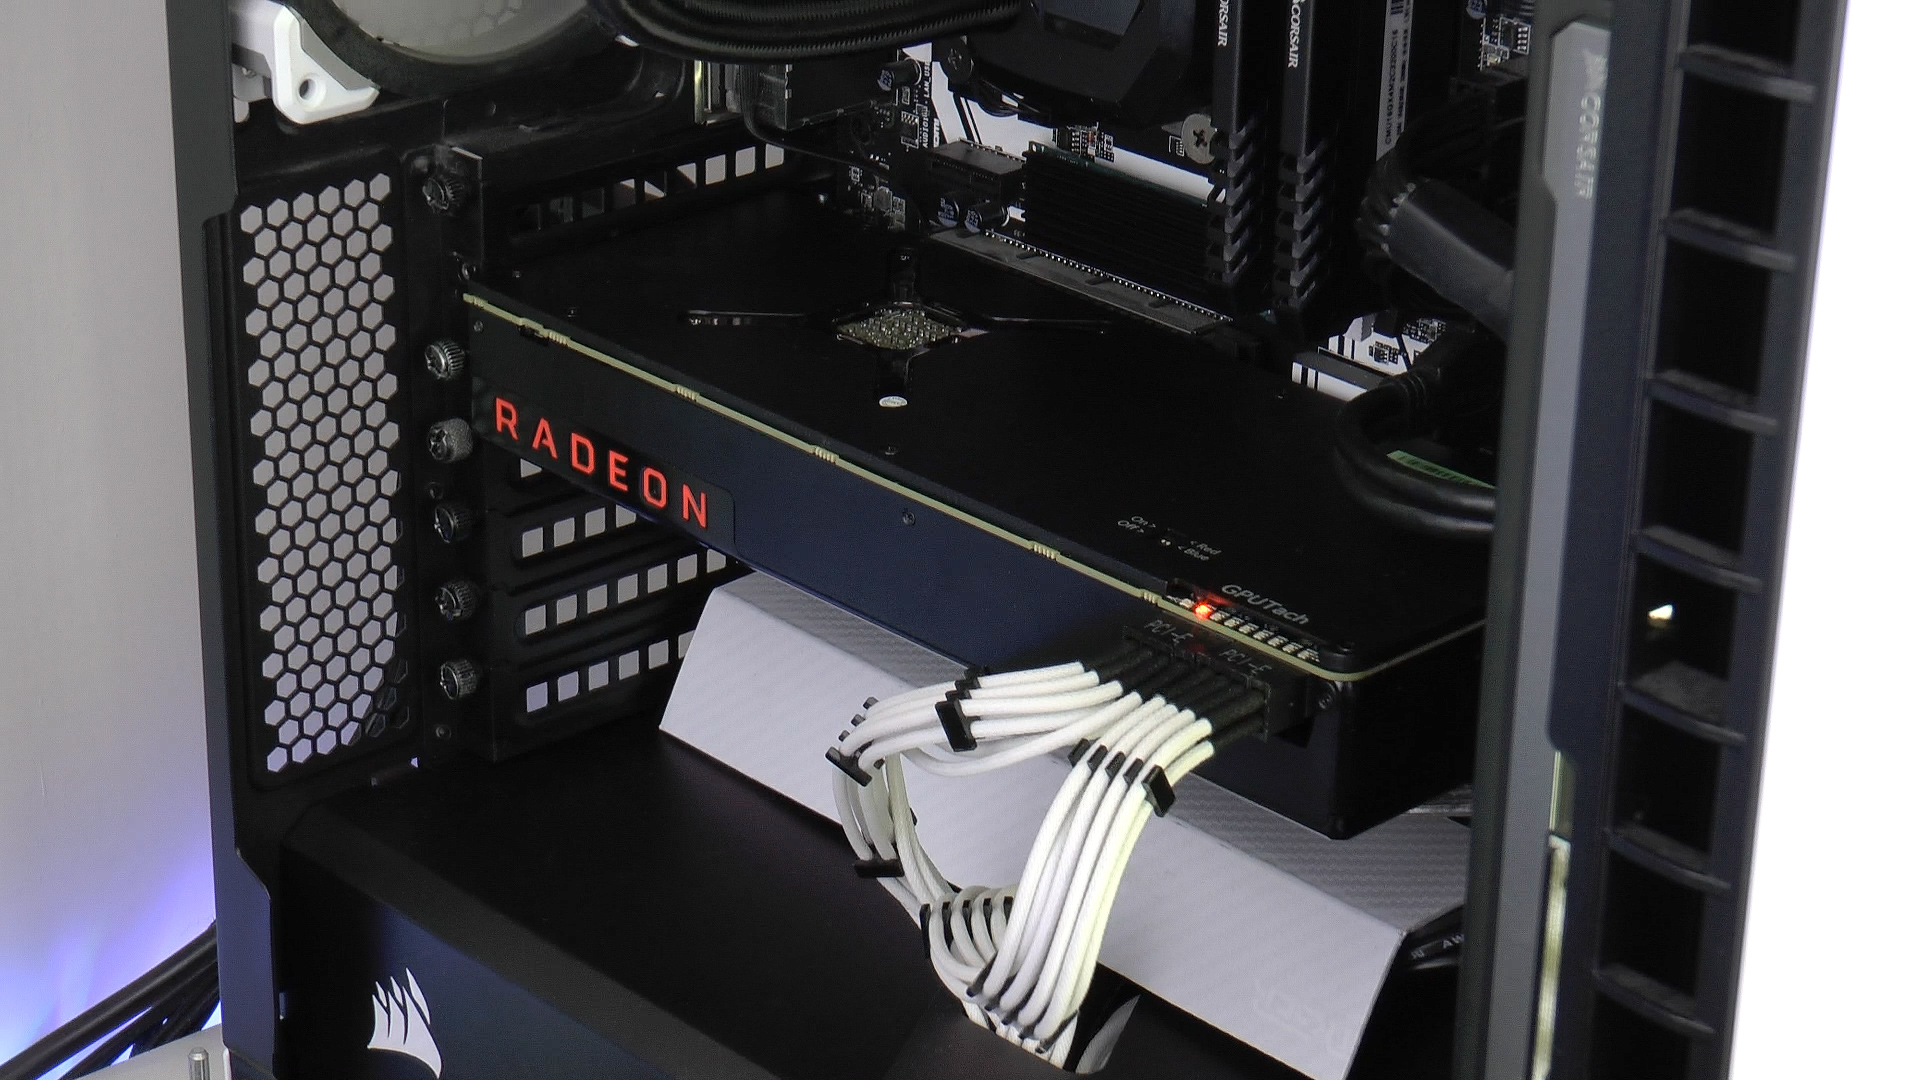 AMD RX Vega 56 incelemesi 'Alev alev DX12 performansı'